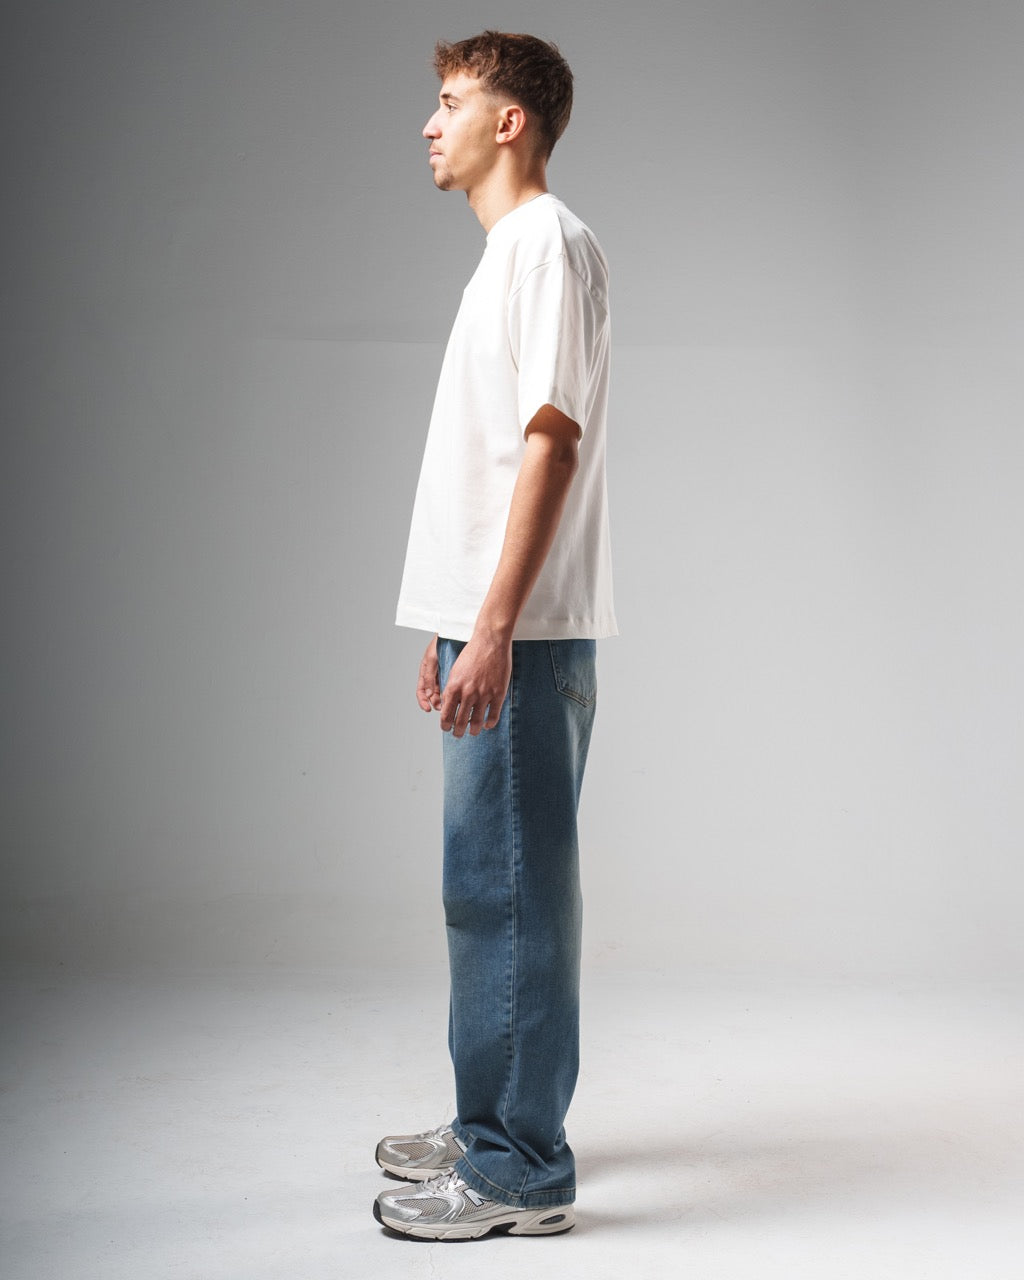 015 Backward Jeans Beige